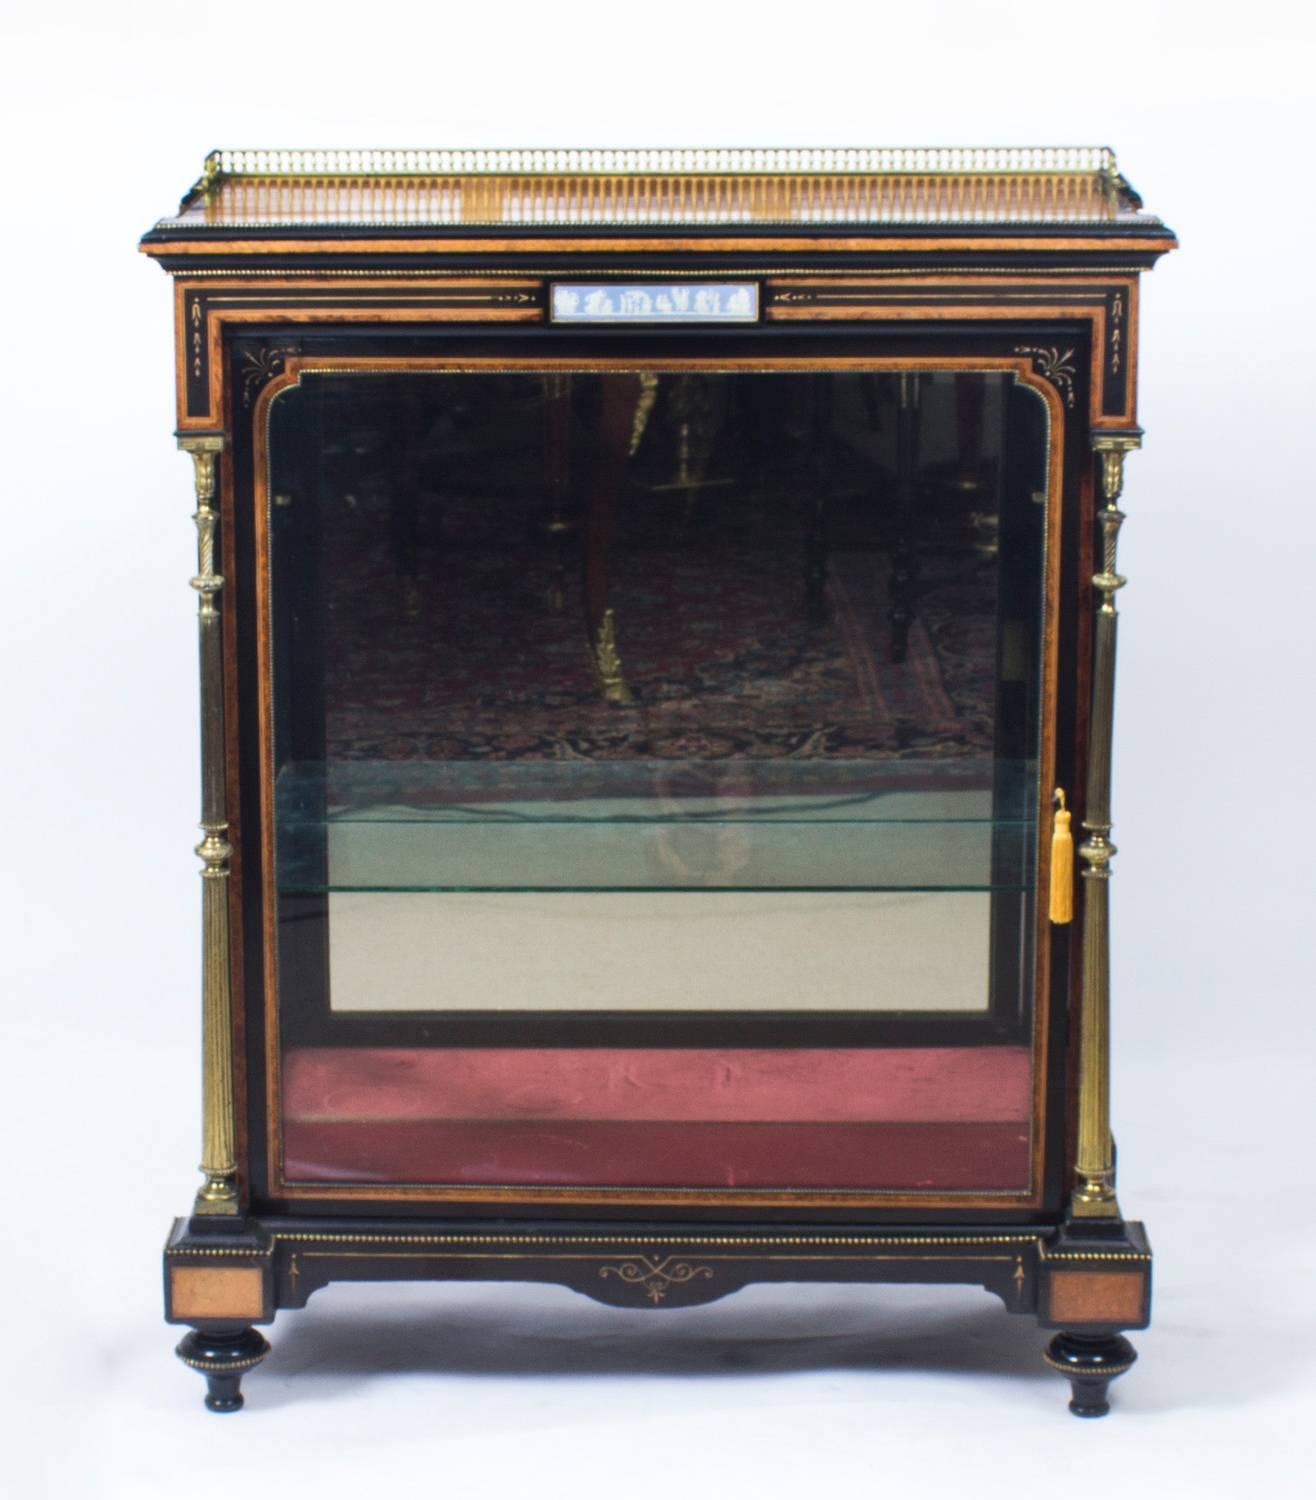 Il s'agit d'une belle armoire victorienne ancienne en amboine et ébène, datant d'environ 1850.

Le plateau rectangulaire en amboine présente une élégante galerie en laiton au-dessus d'une frise incrustée d'une plaque en jaspe 